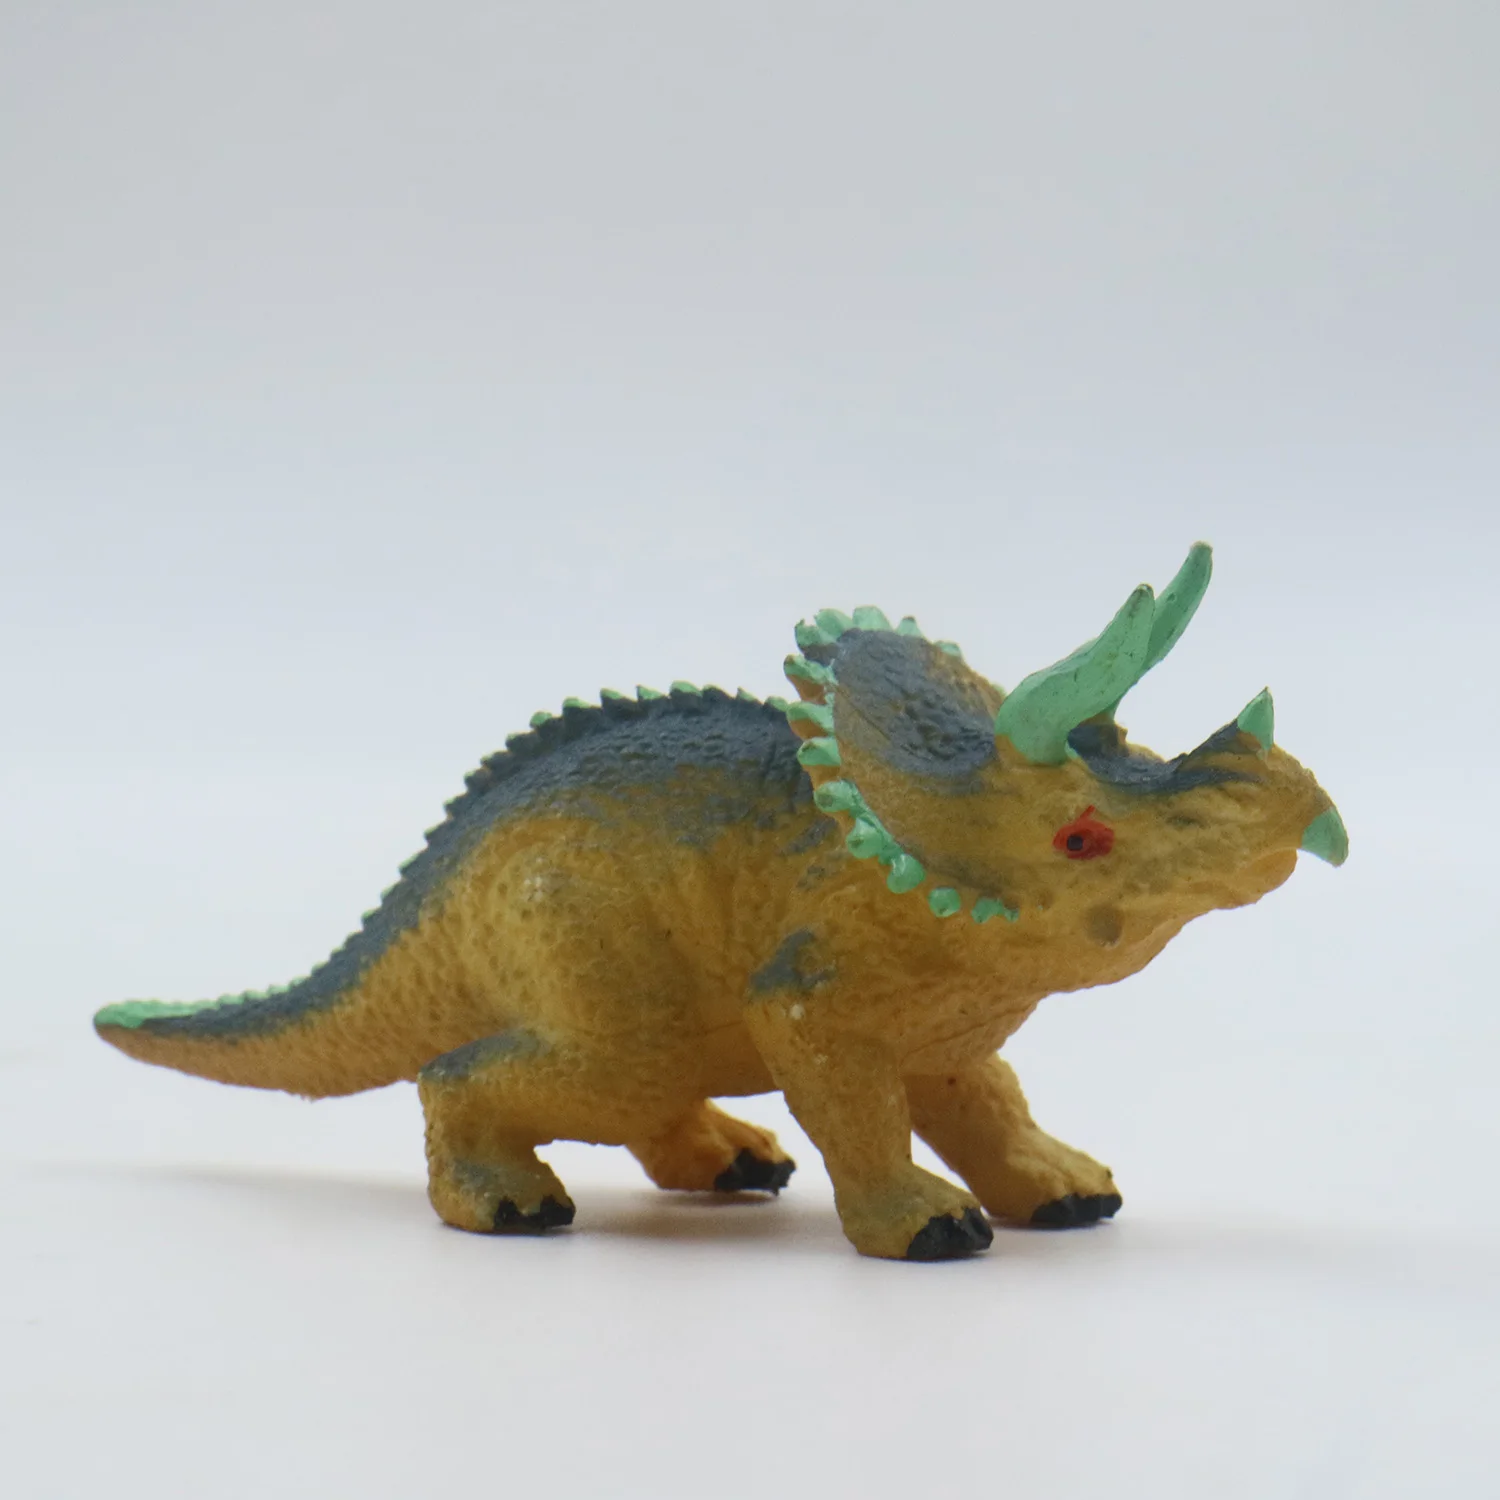 Promosi Mini Kartun Dinosaurus Plastik Sosok Mainan Model Untuk Dijual Buy Miniatur Dinosaurus Gambar Mainan